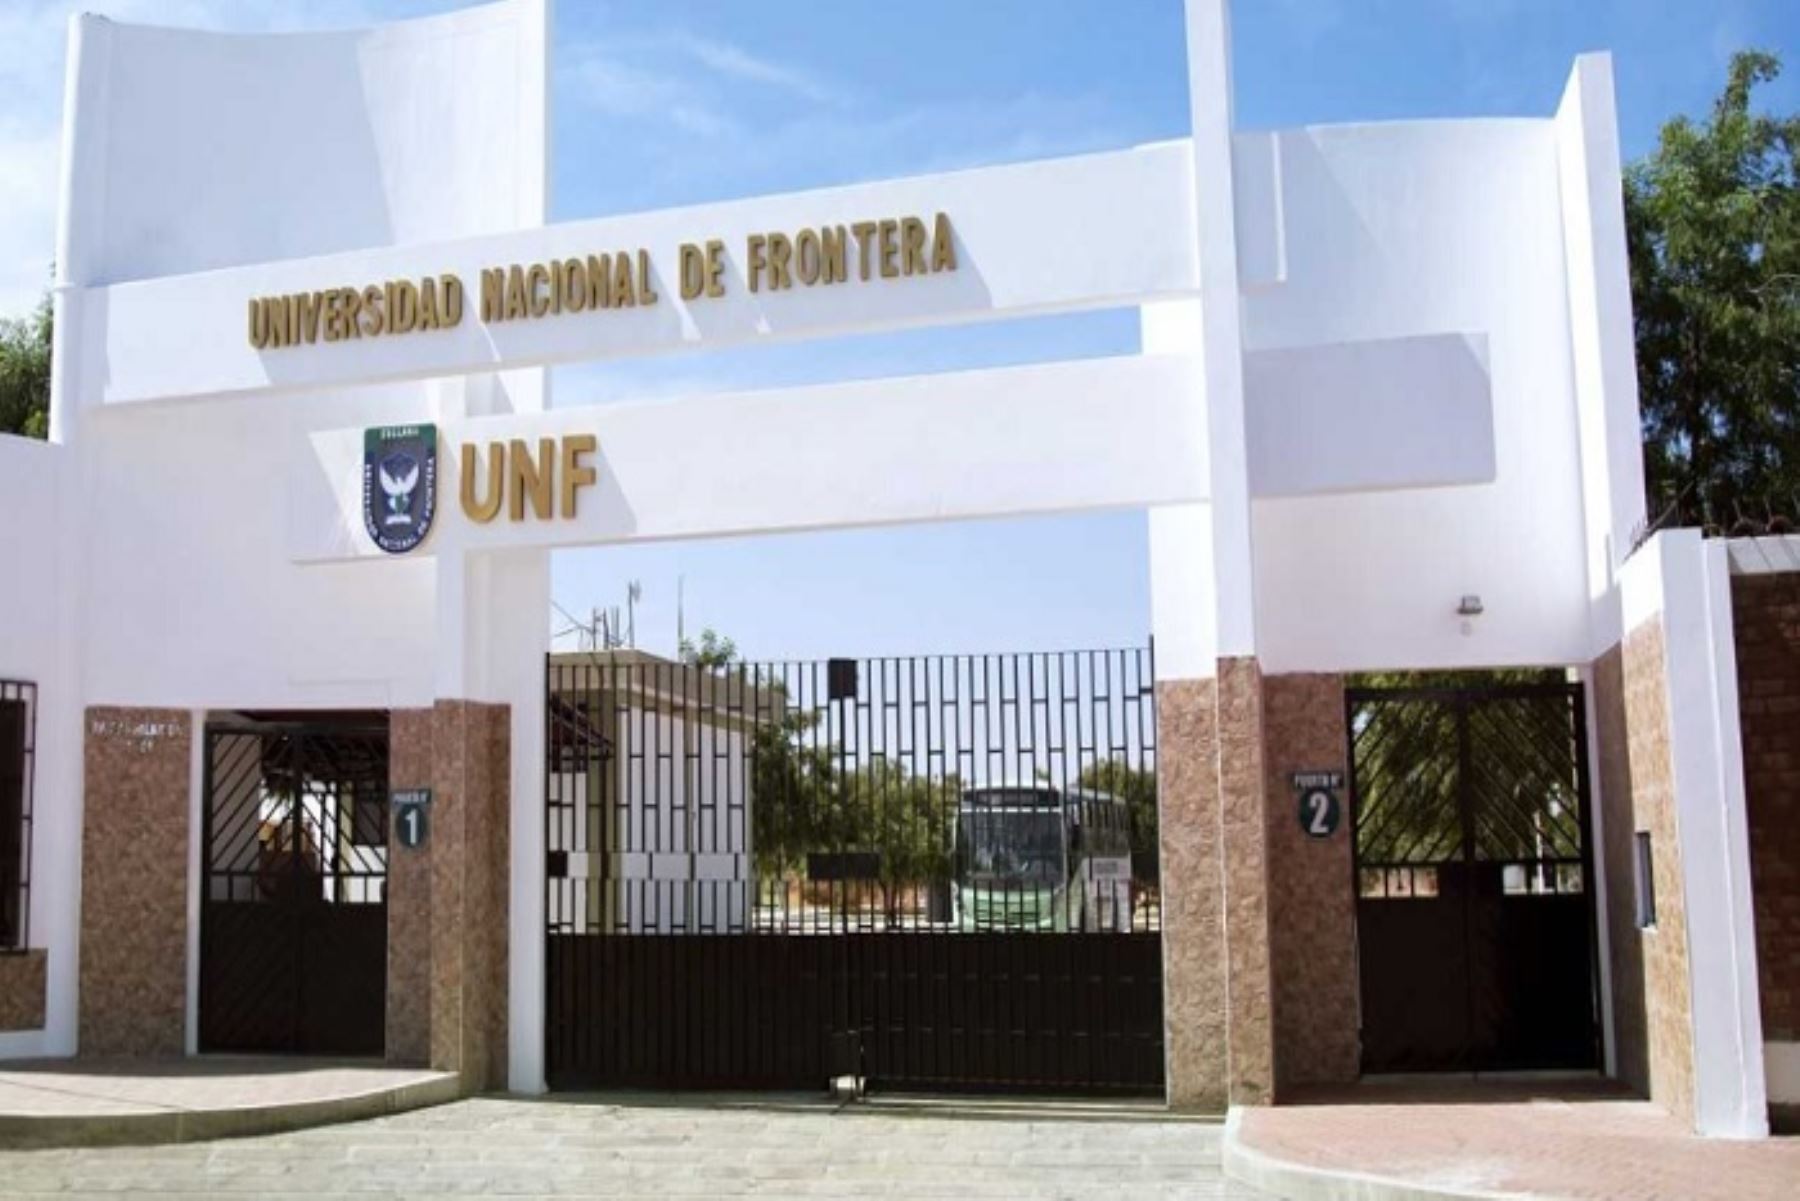 La oferta educativa de la Universidad Nacional de Frontera está vinculada con las actividades económicas desarrolladas en la provincia de Sullana.